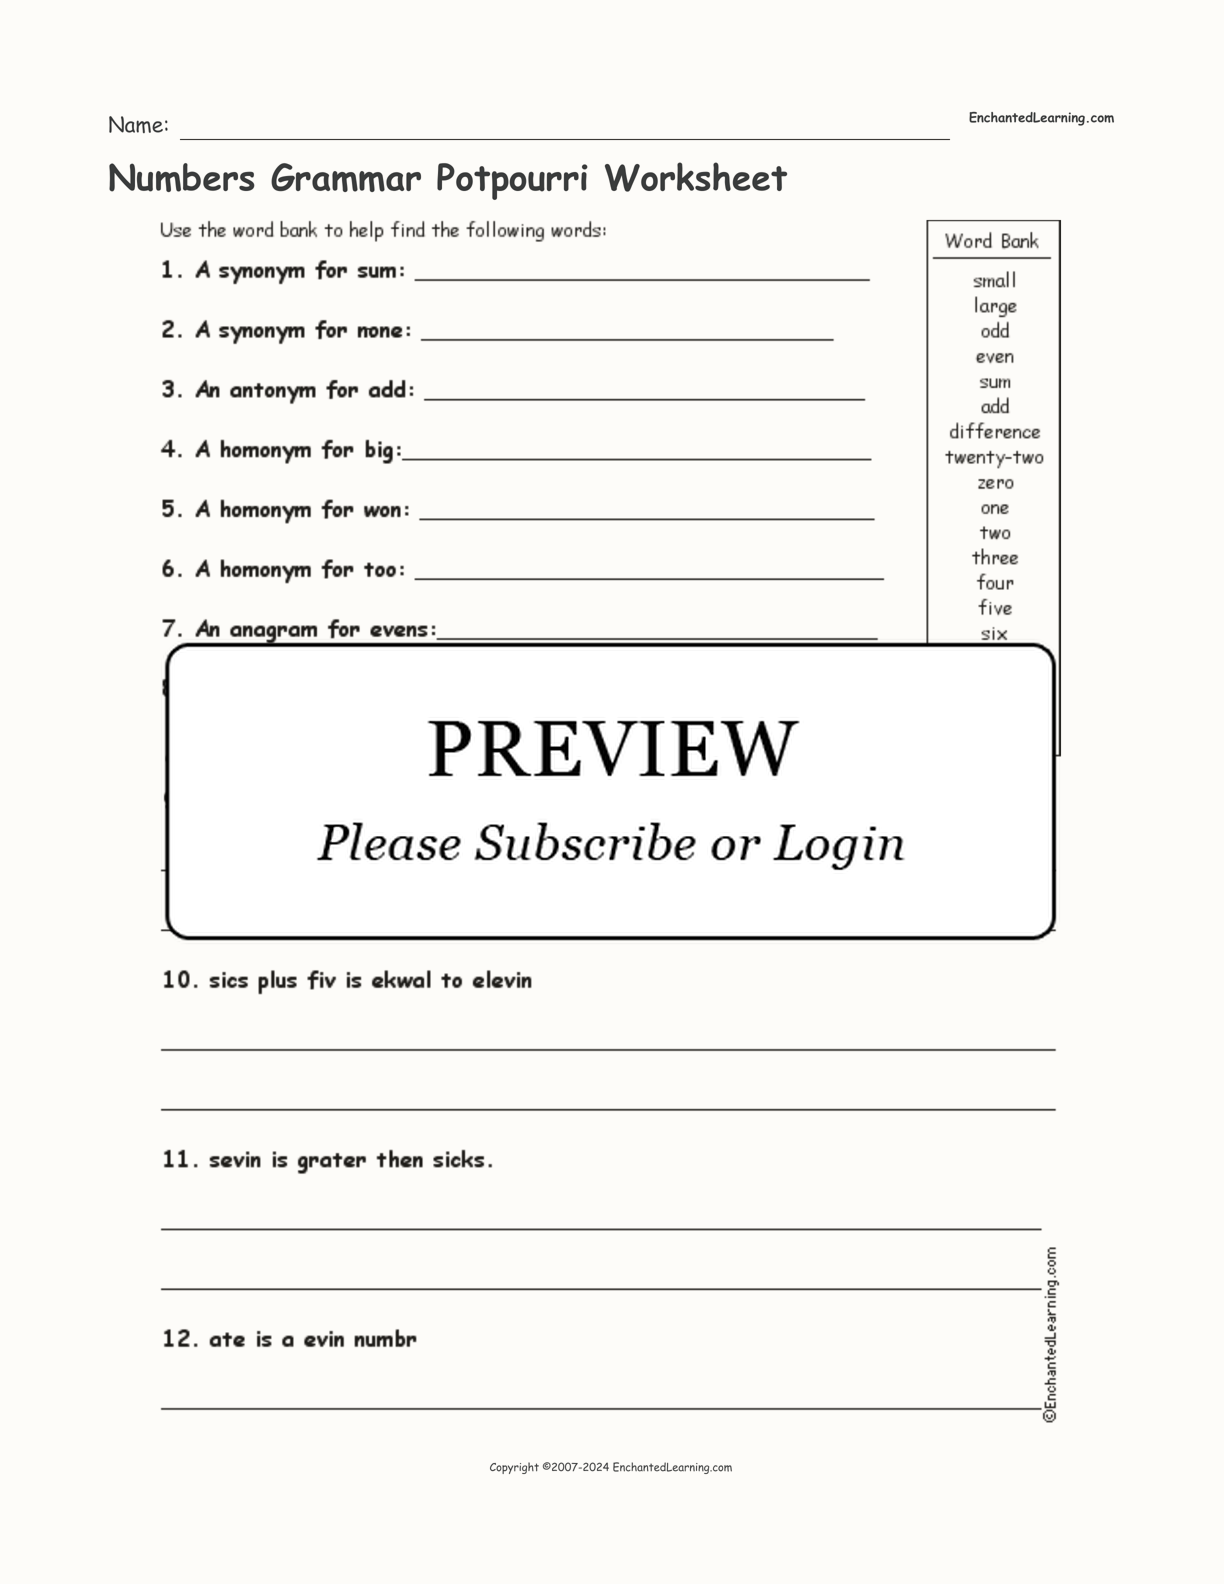 Numbers Grammar Potpourri Worksheet interactive worksheet page 1